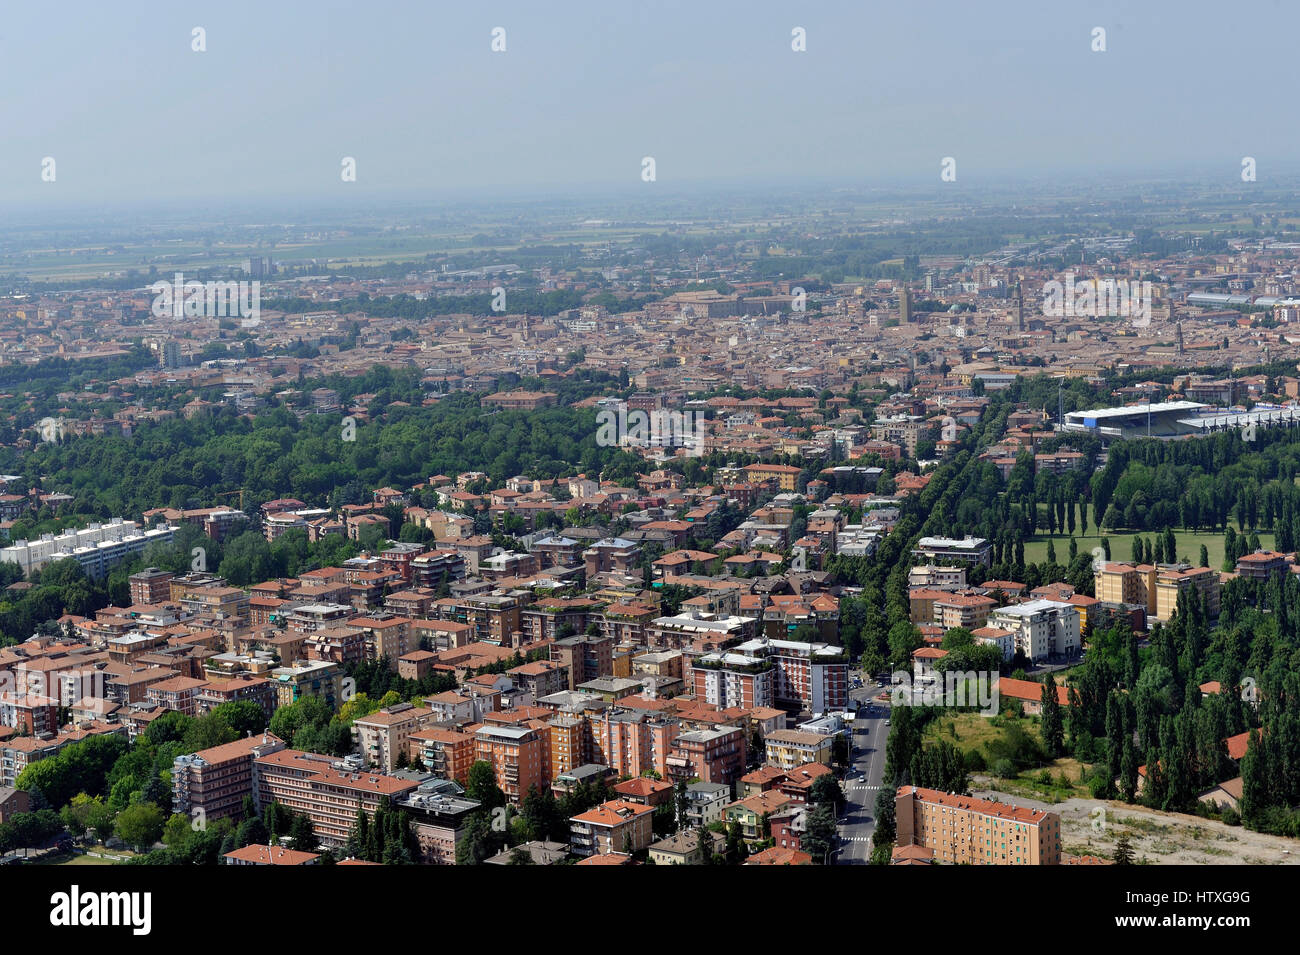 Vista aerea di Parma con Piazza del Duomo, la cattedrale e il Battistero; Pilotta, Taro, Tardini - Regione Emilia Romagna, Italia Foto Stock